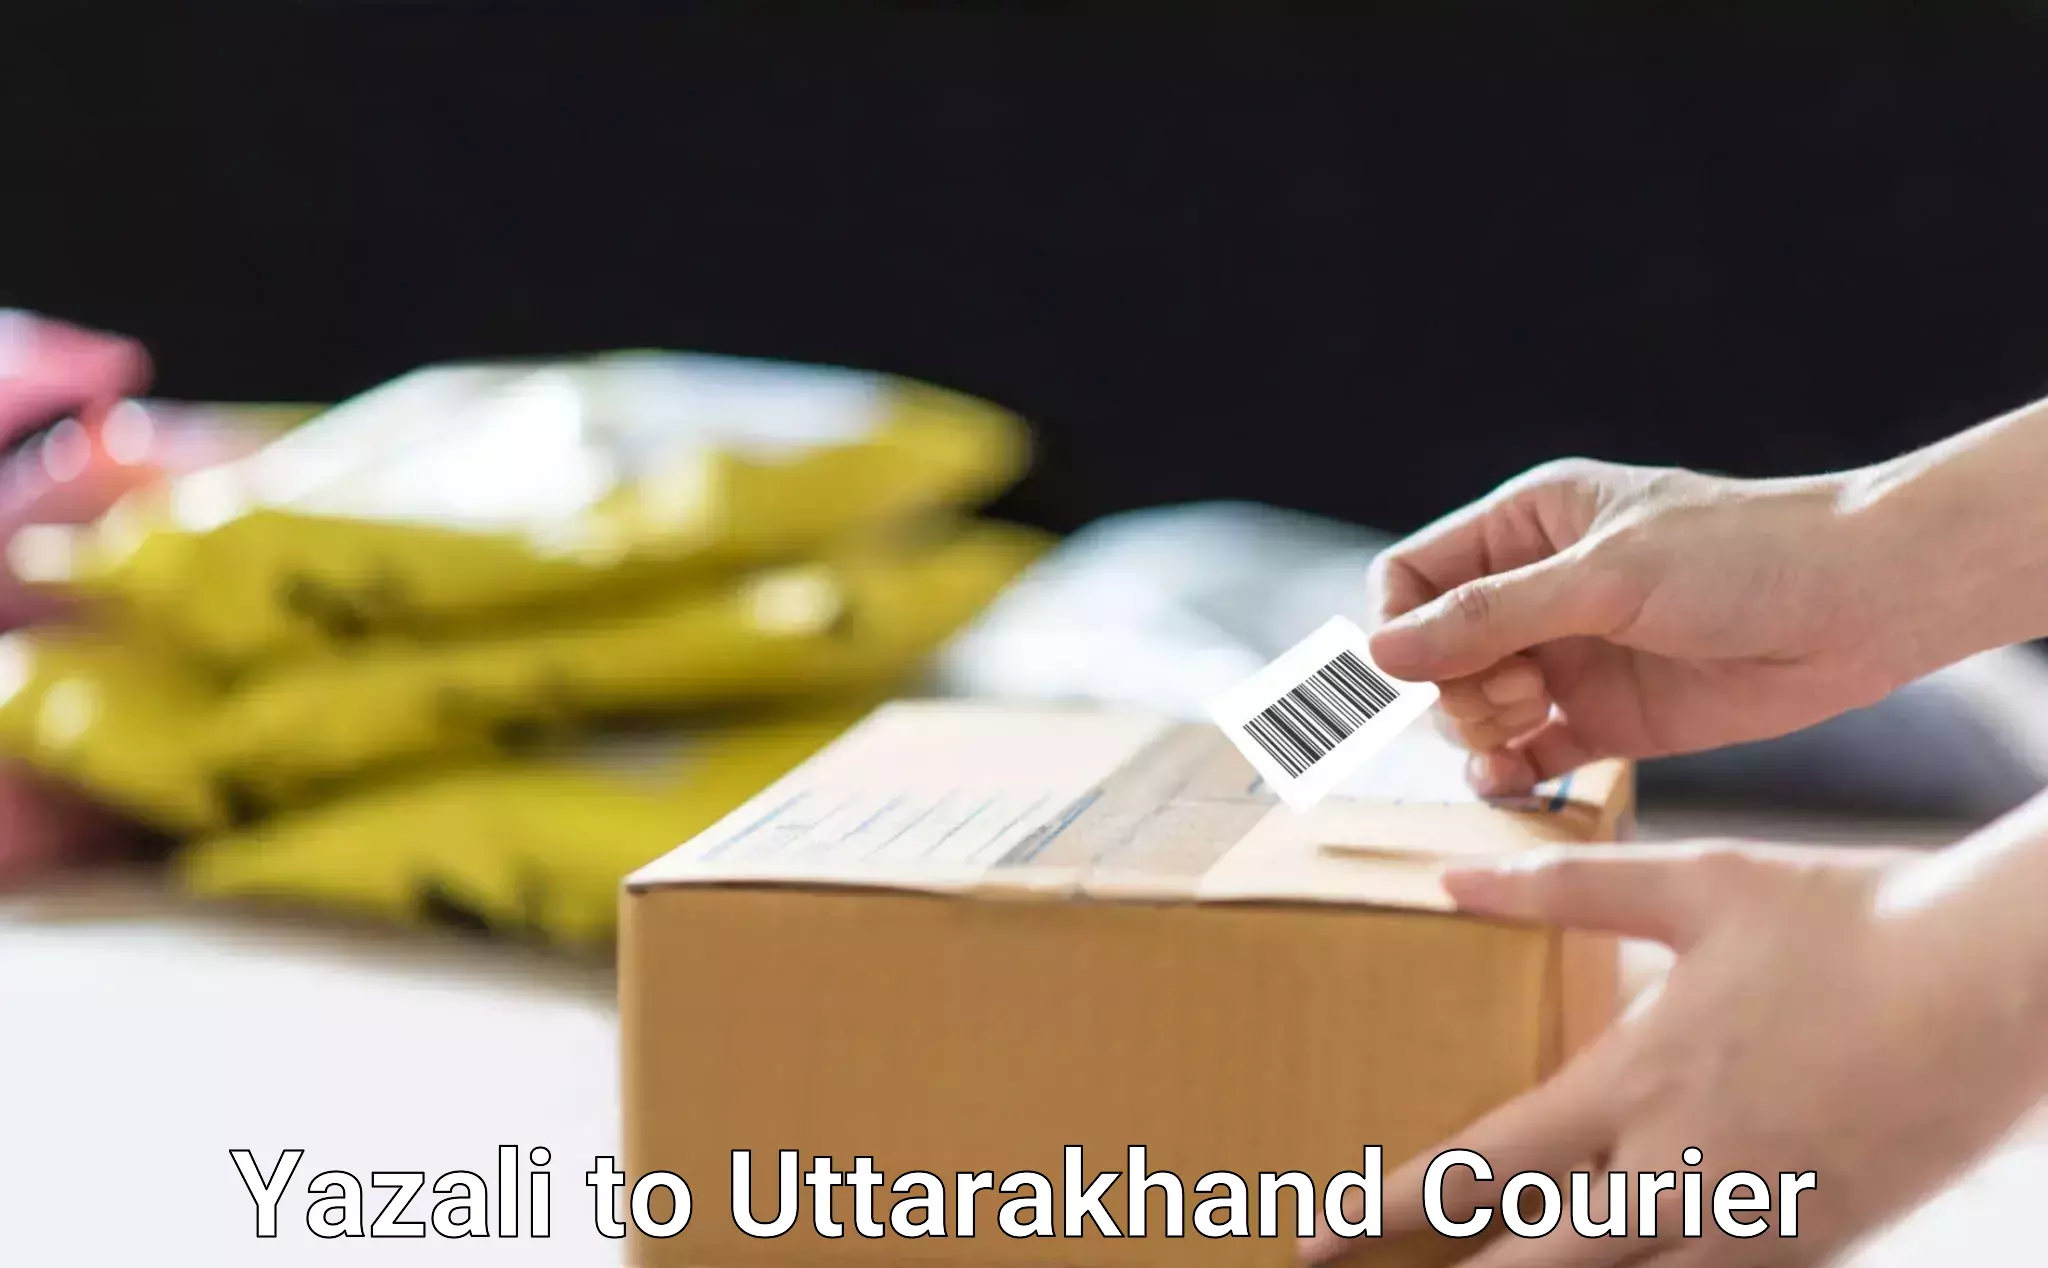 Sustainable delivery practices Yazali to Uttarkashi